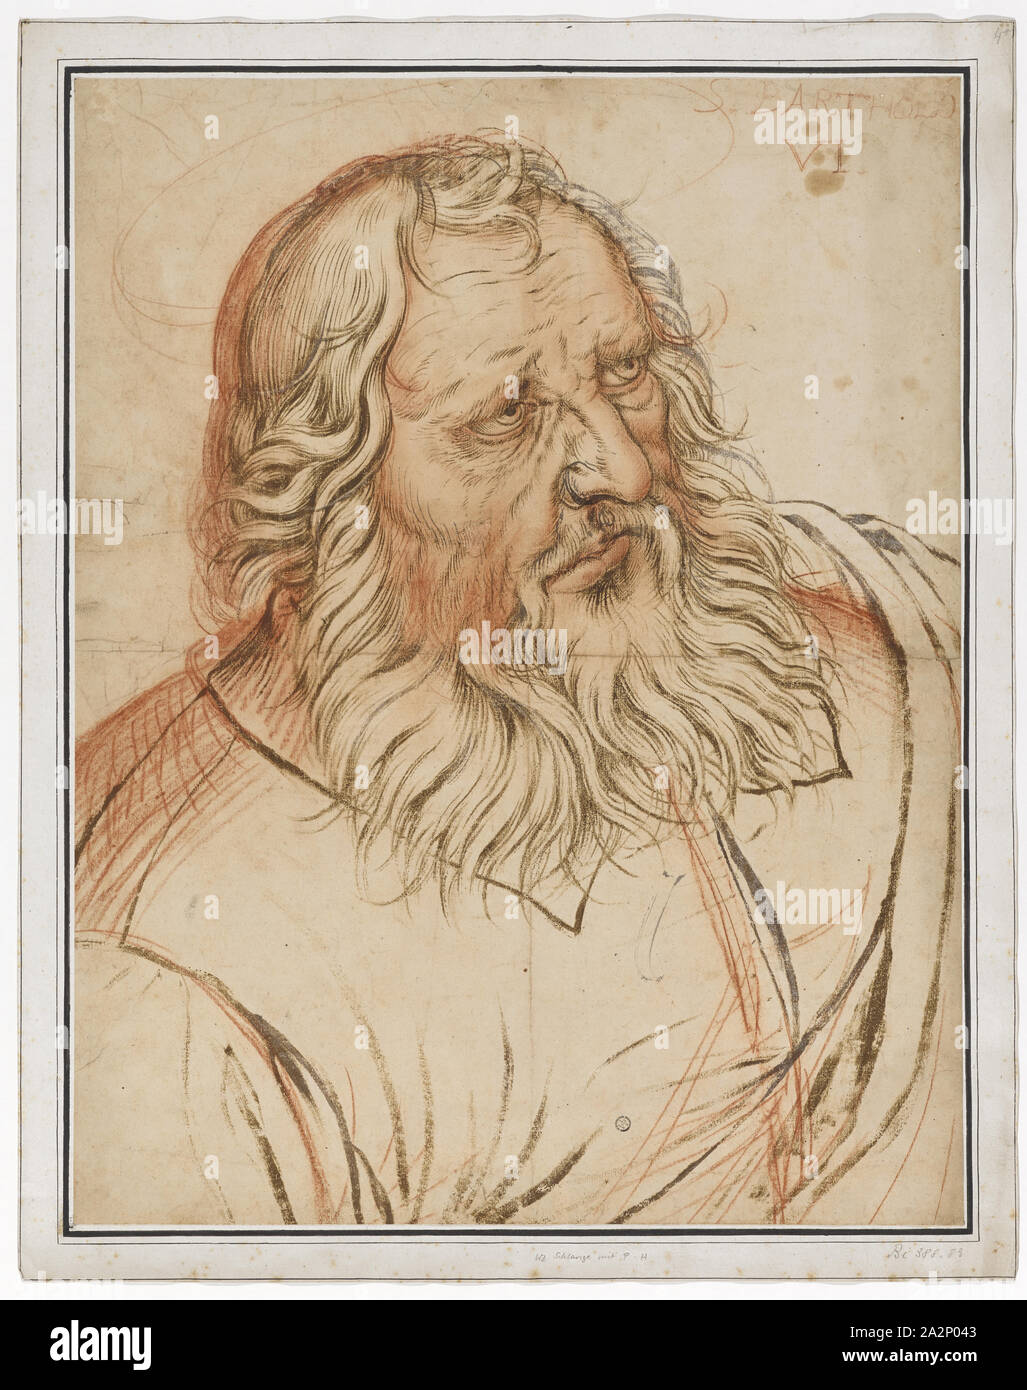 El apóstol Bartolomé, alrededor de 1585, el pincel en color marrón y gris, Tiza roja, herida firmemente, hoja: 55,2 x 42,8 cm, O. r., marcadas con tiza roja: S. BARTHOLO, VI., Hendrick Goltzius, Mühlbrecht 1558-1617 Haarlem. Foto de stock